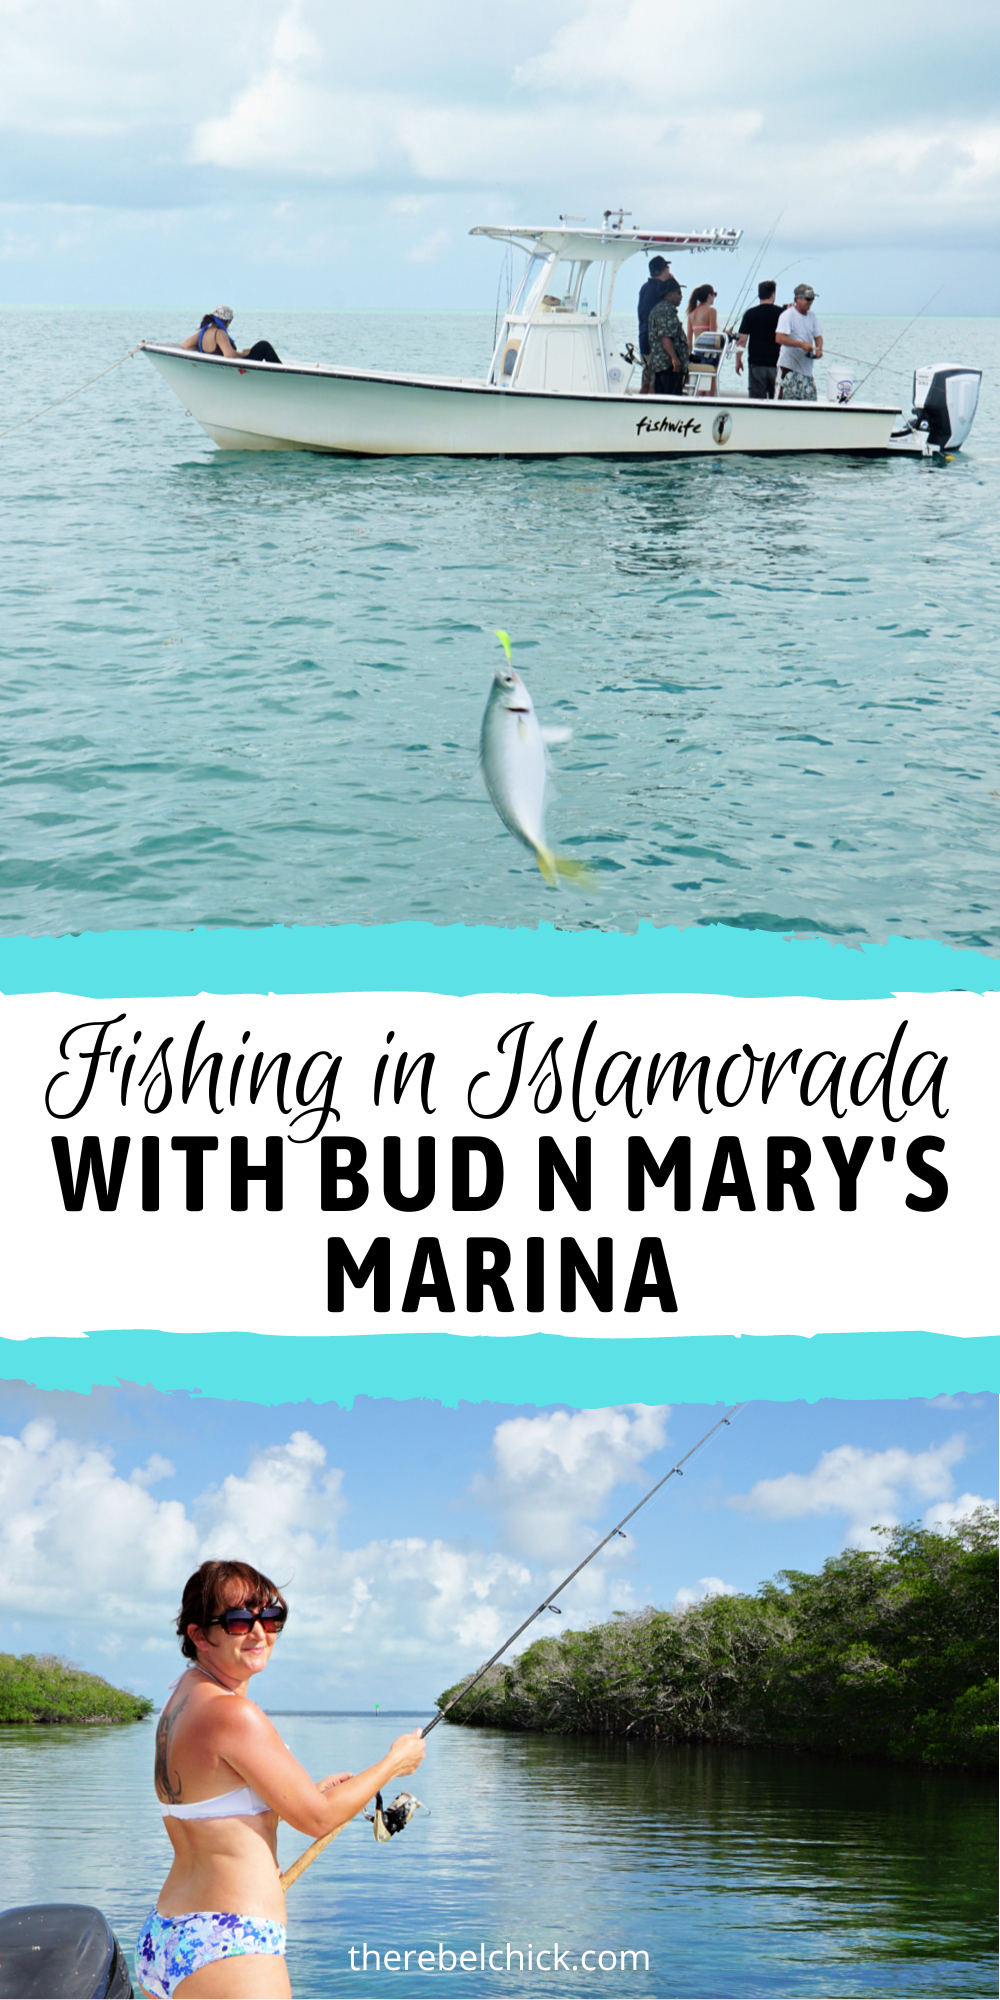 Fishing in Islamorada With Bud N Mary's Marina